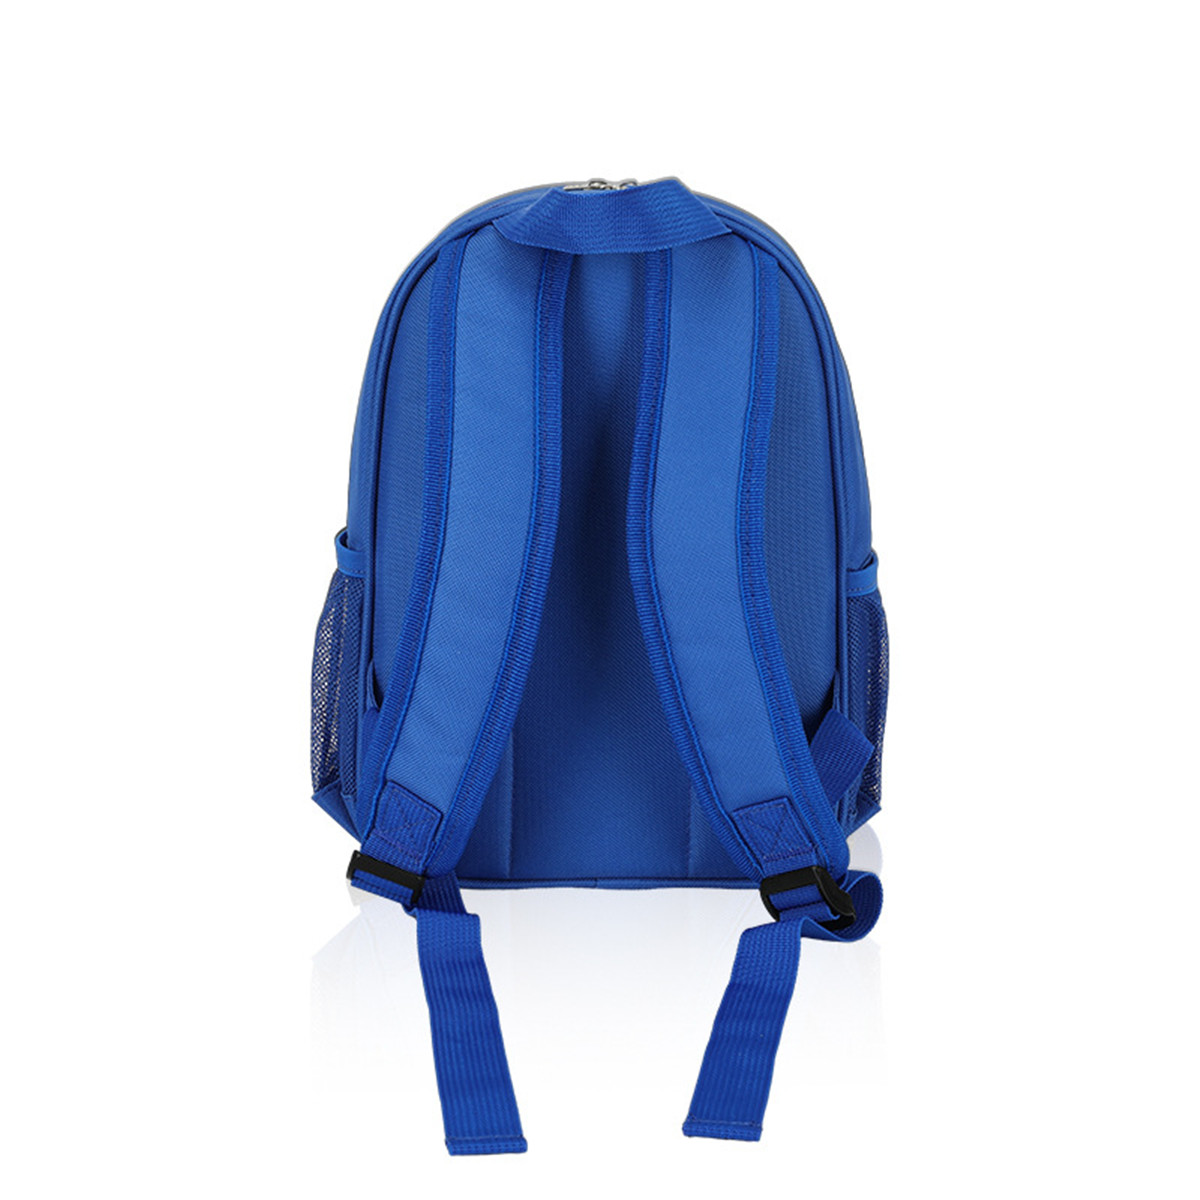 büyük uzay mavisi ilk yardım çantası-01 (6)ecp